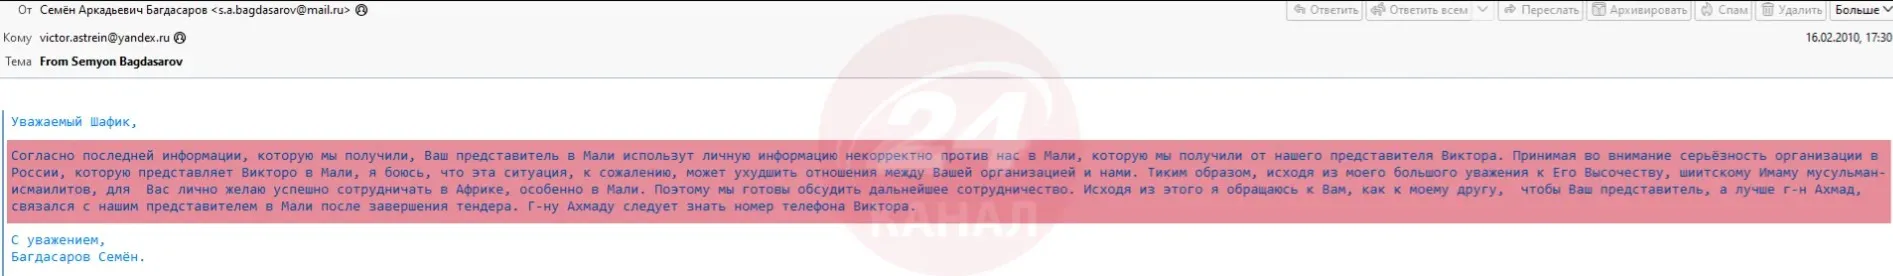 Багдасаров погрожував своєму бізнес-партнеру / Скриншот із пошти росіянина